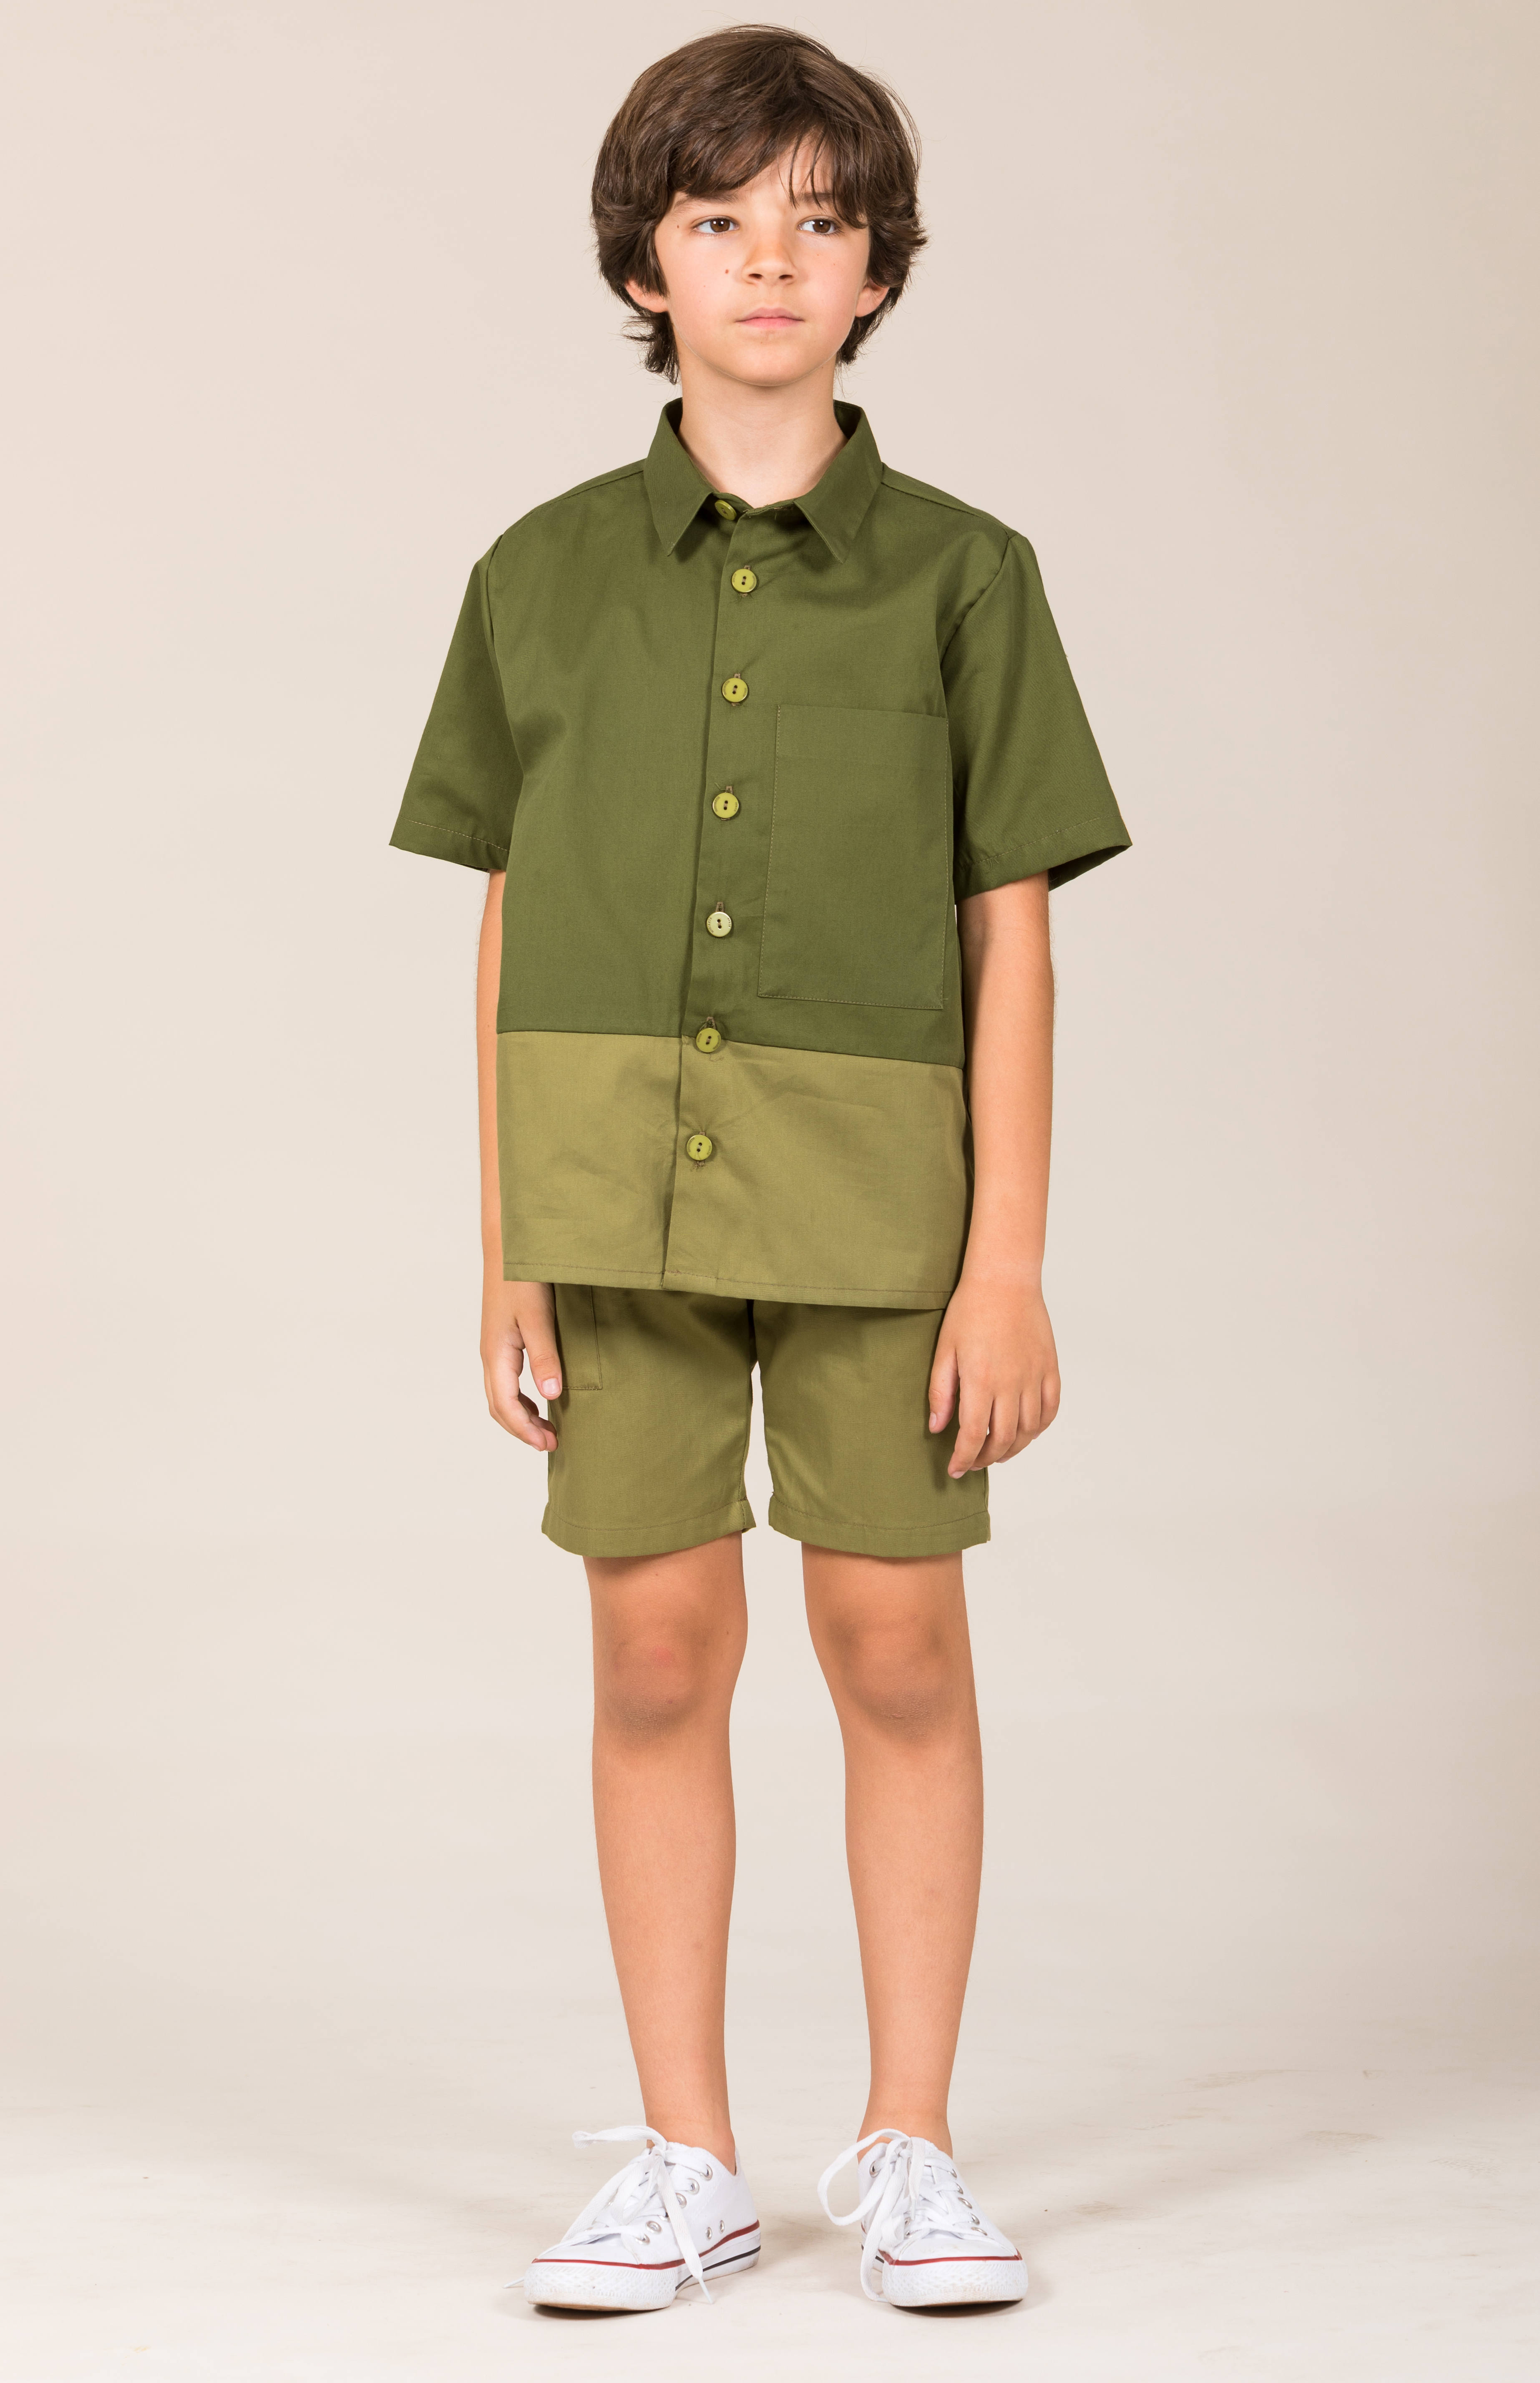                                                                                                                                              Pocket shorts - Green